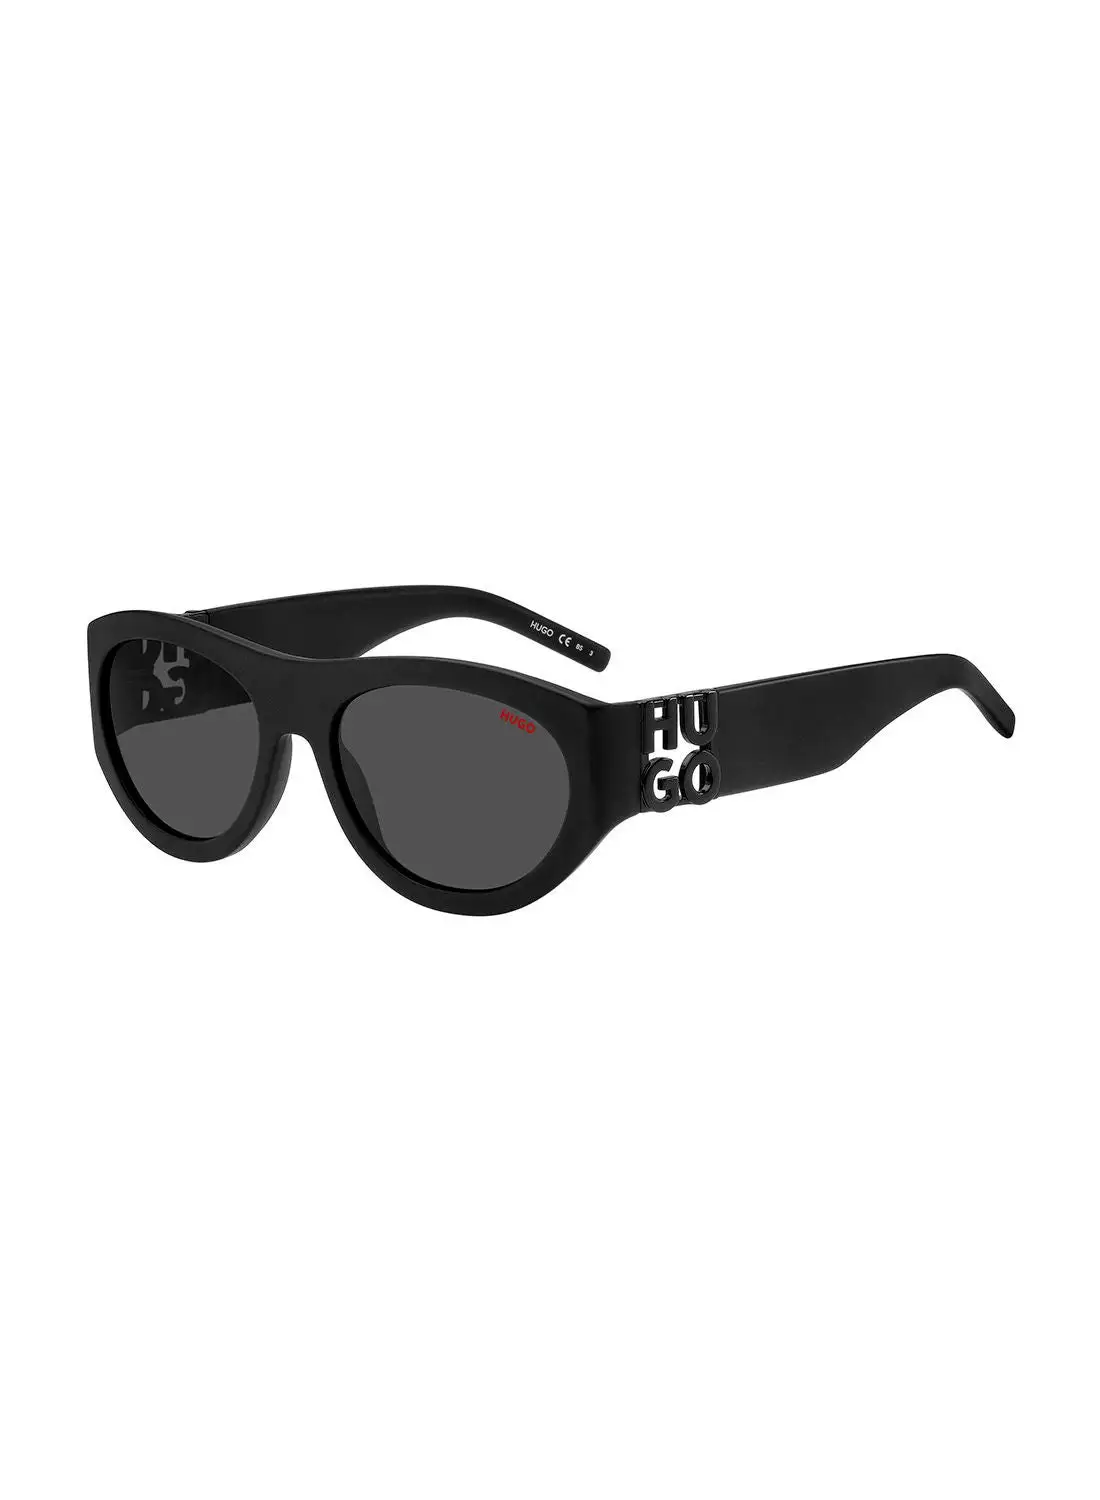 HUGO Men's UV Protection Rectangular Sunglasses - Hg 1254/S Black 57 - Lens Size: 57 Mm